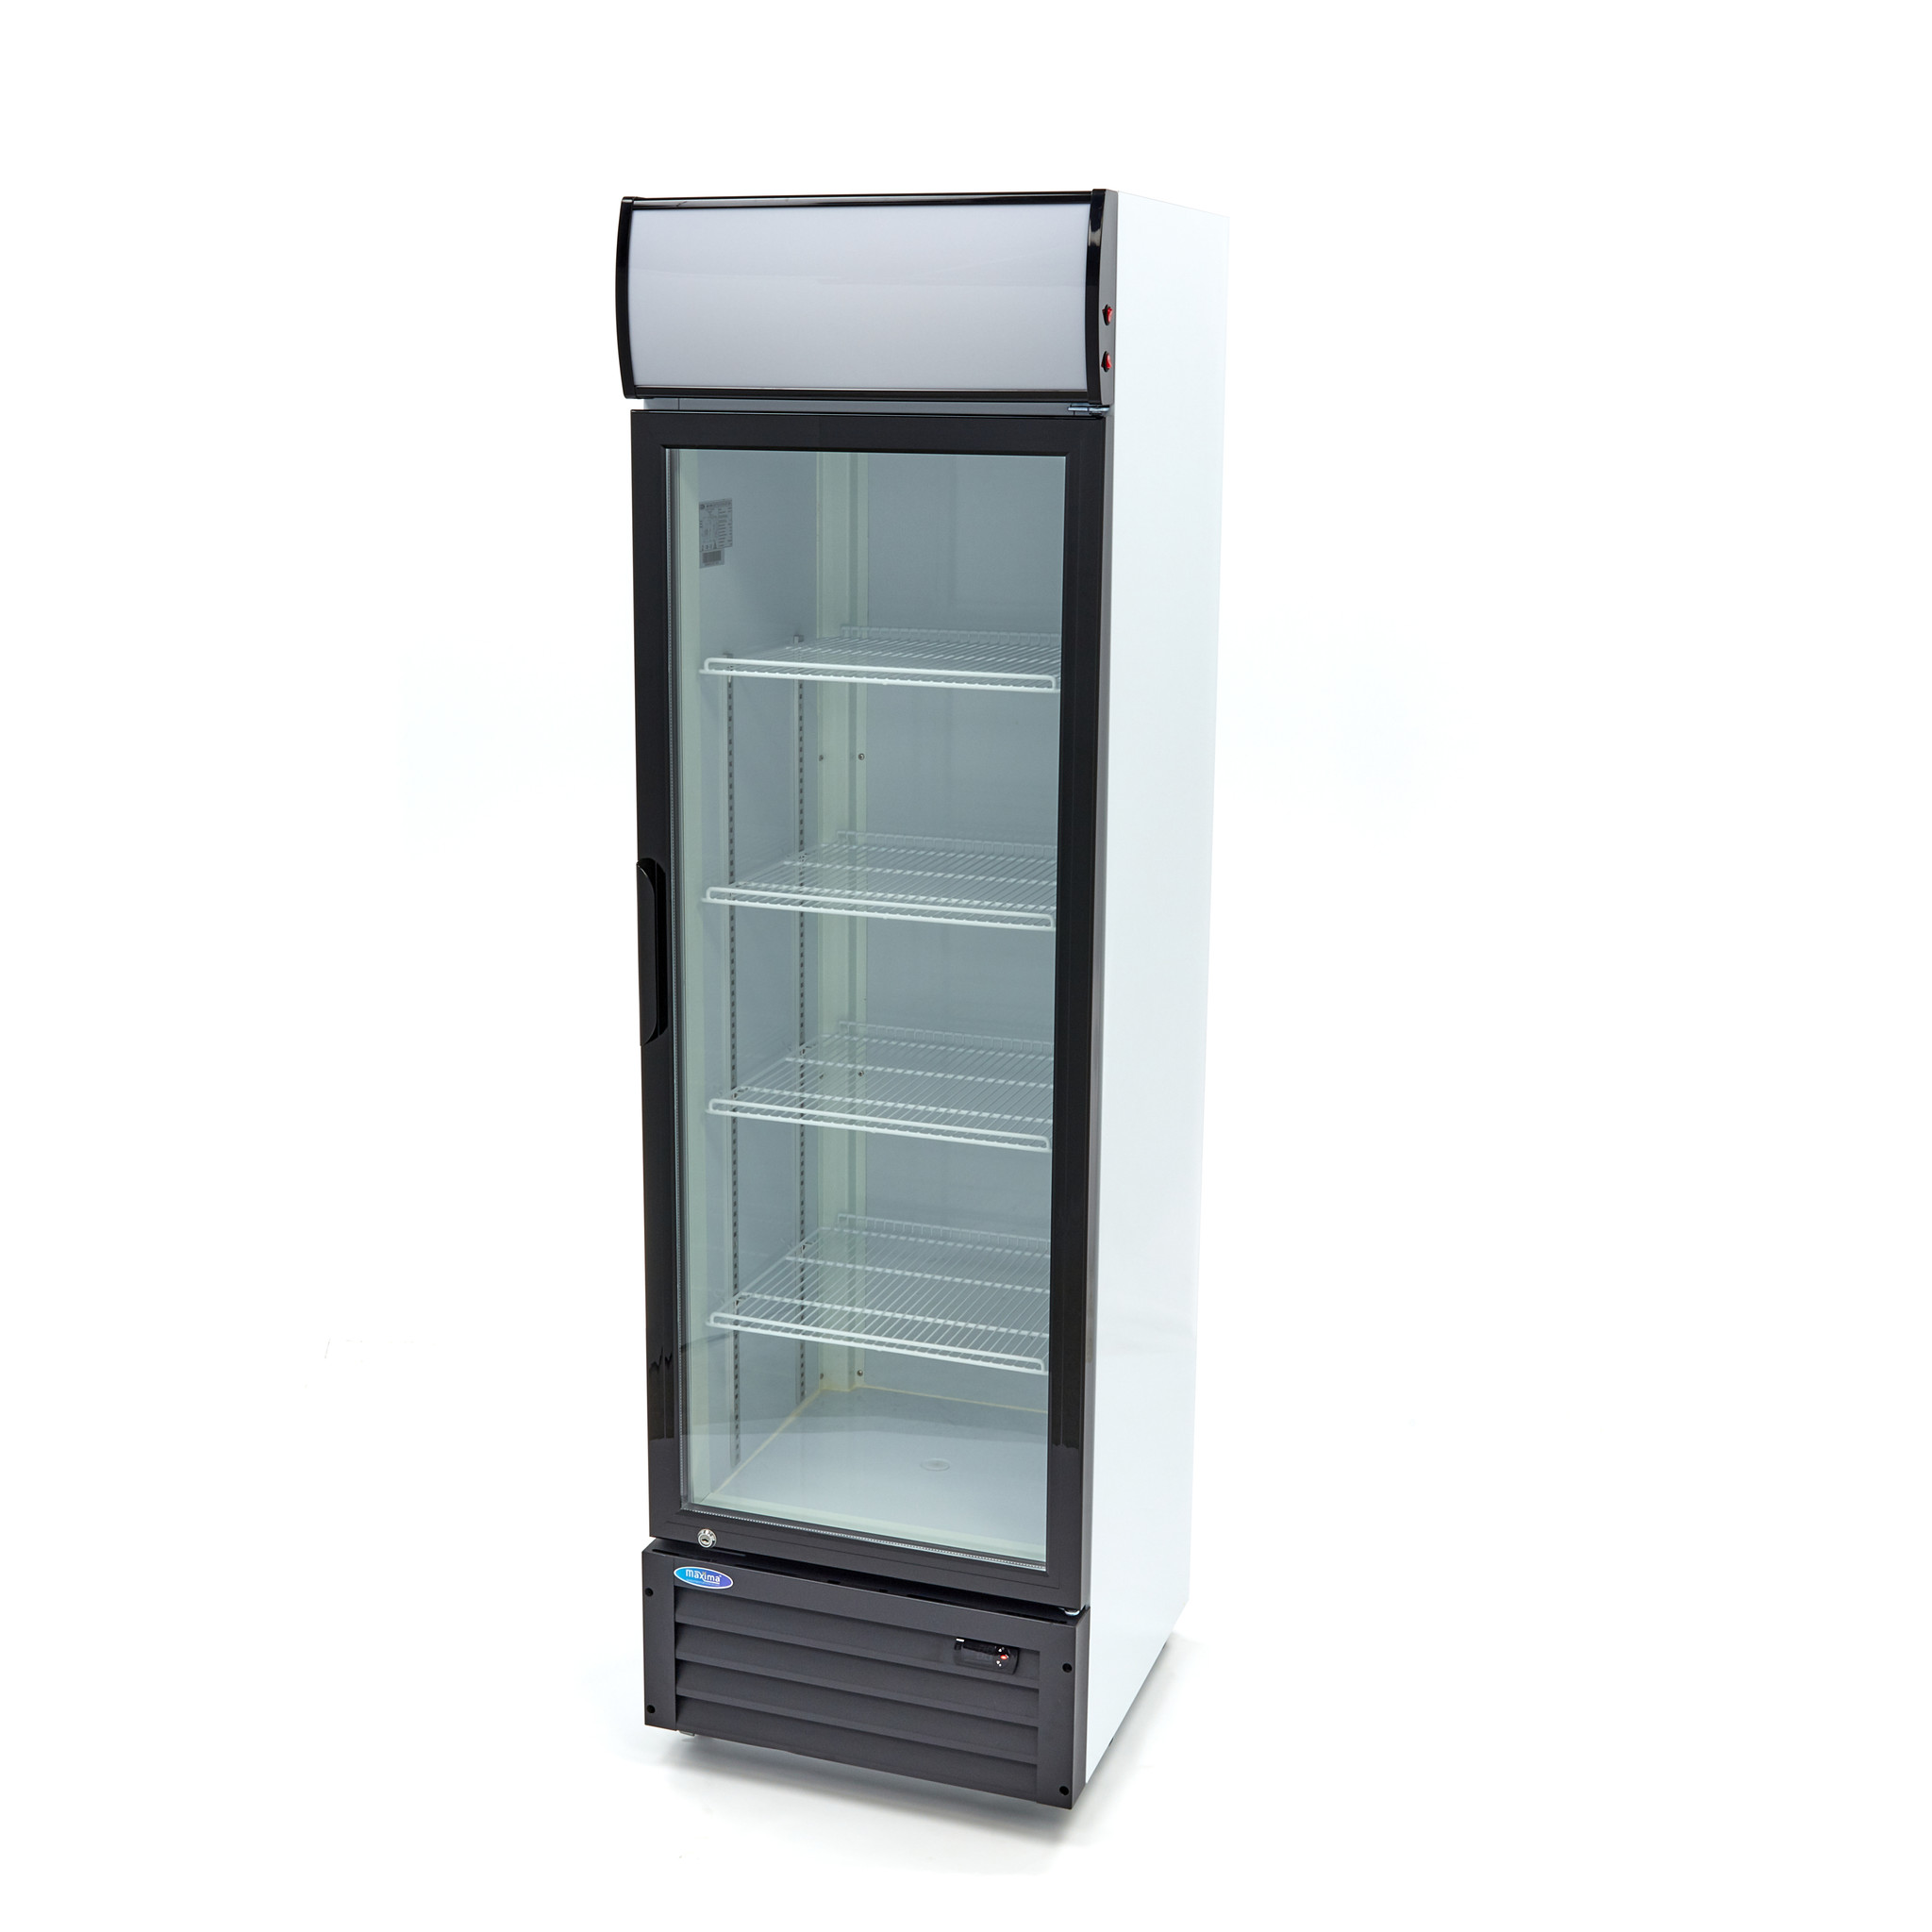 Maks hladilnik / Hladilnik za pločevinke / Hladilnik za steklenice 360L